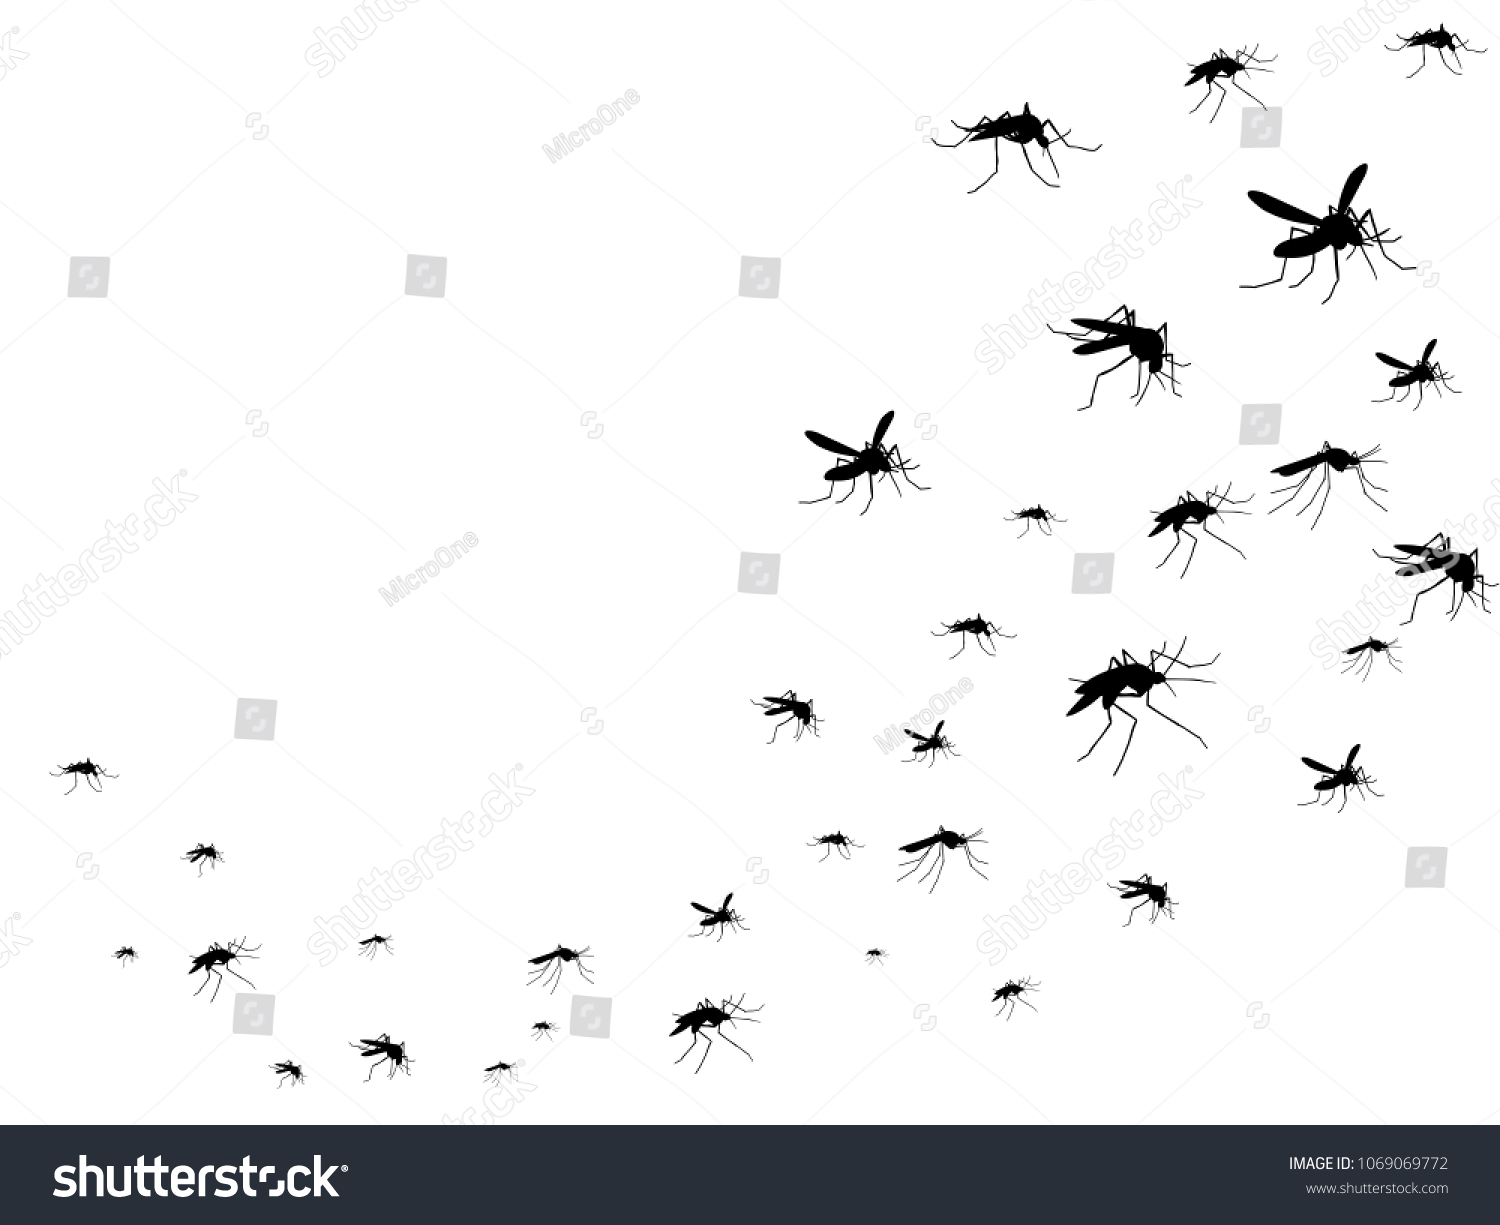 飛蚊の黒いシルエット 虫が空に群がる ウイルスや病気が医療のベクター画像のコンセプトを広めている 虫の蚊の黒いシルエット 蚊と害虫のイラスト のベクター画像素材 ロイヤリティフリー